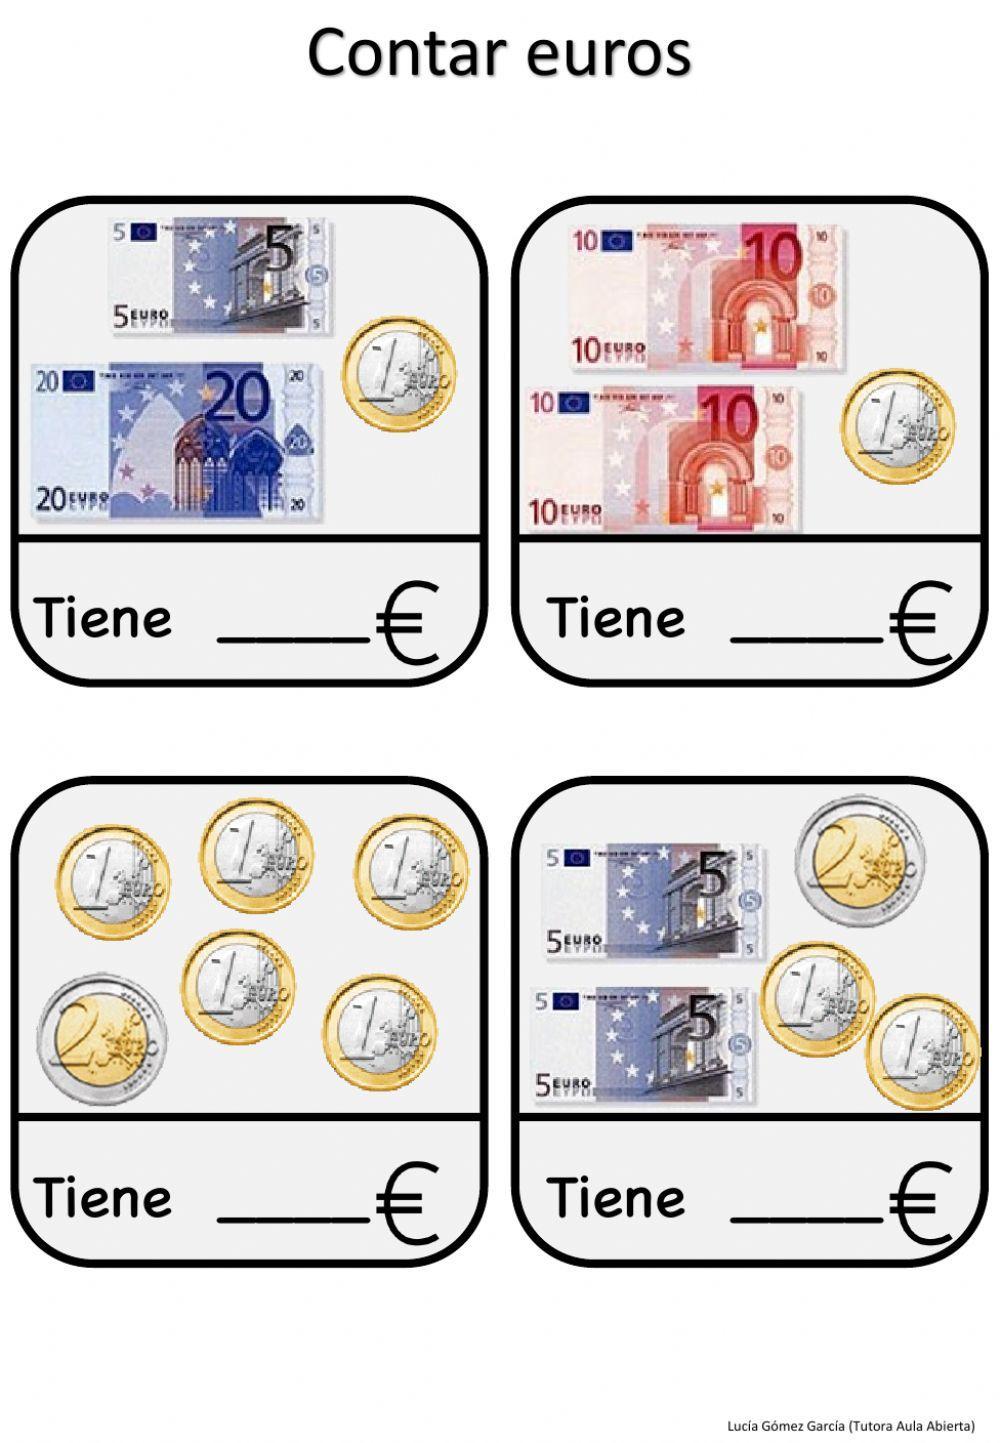 Contar euros